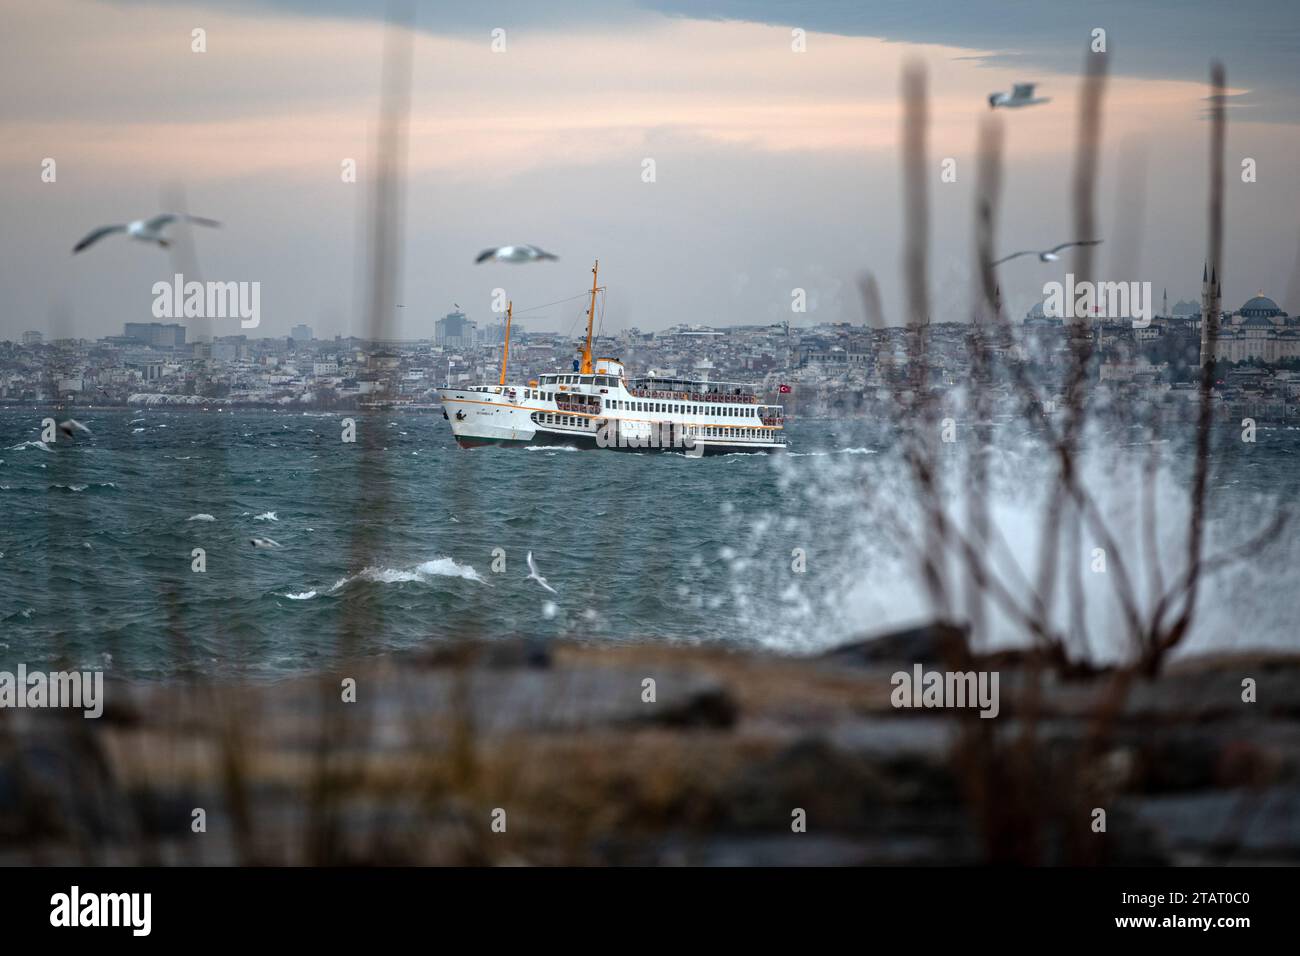 Mouettes vues voler au-dessus du ferry des lignes de la ville passant derrière les vagues frappant les rochers à la plage de Moda. En raison du vent du sud-ouest affectant Istanbul, de hautes vagues ont été observées sur la côte de Moda. Banque D'Images